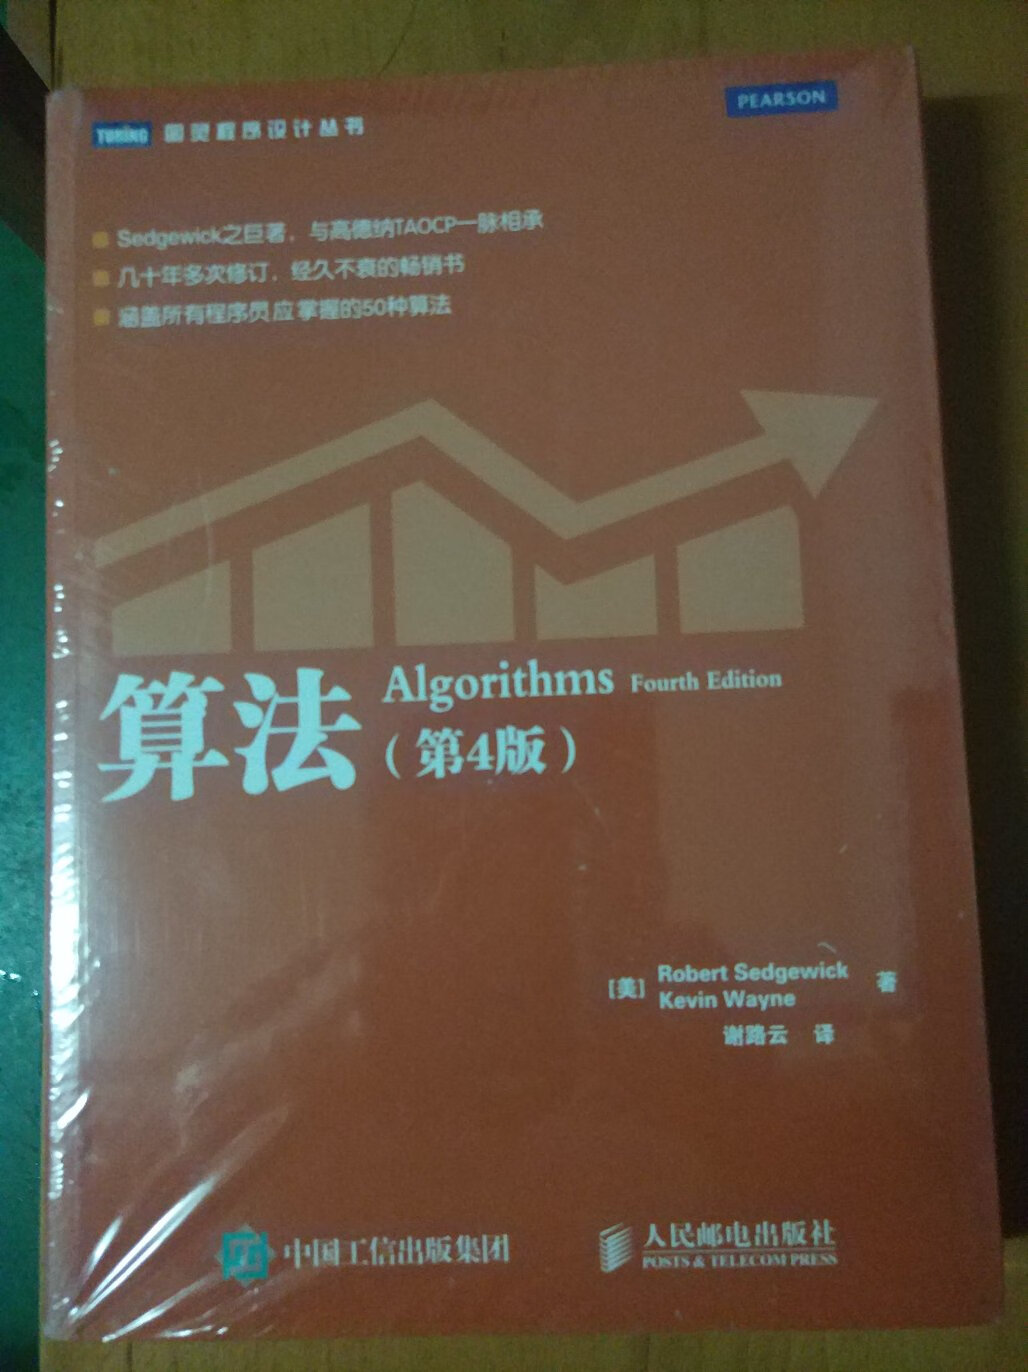 本书讲解了java常用的算法和数据结构，是java程序员进阶必备书籍。